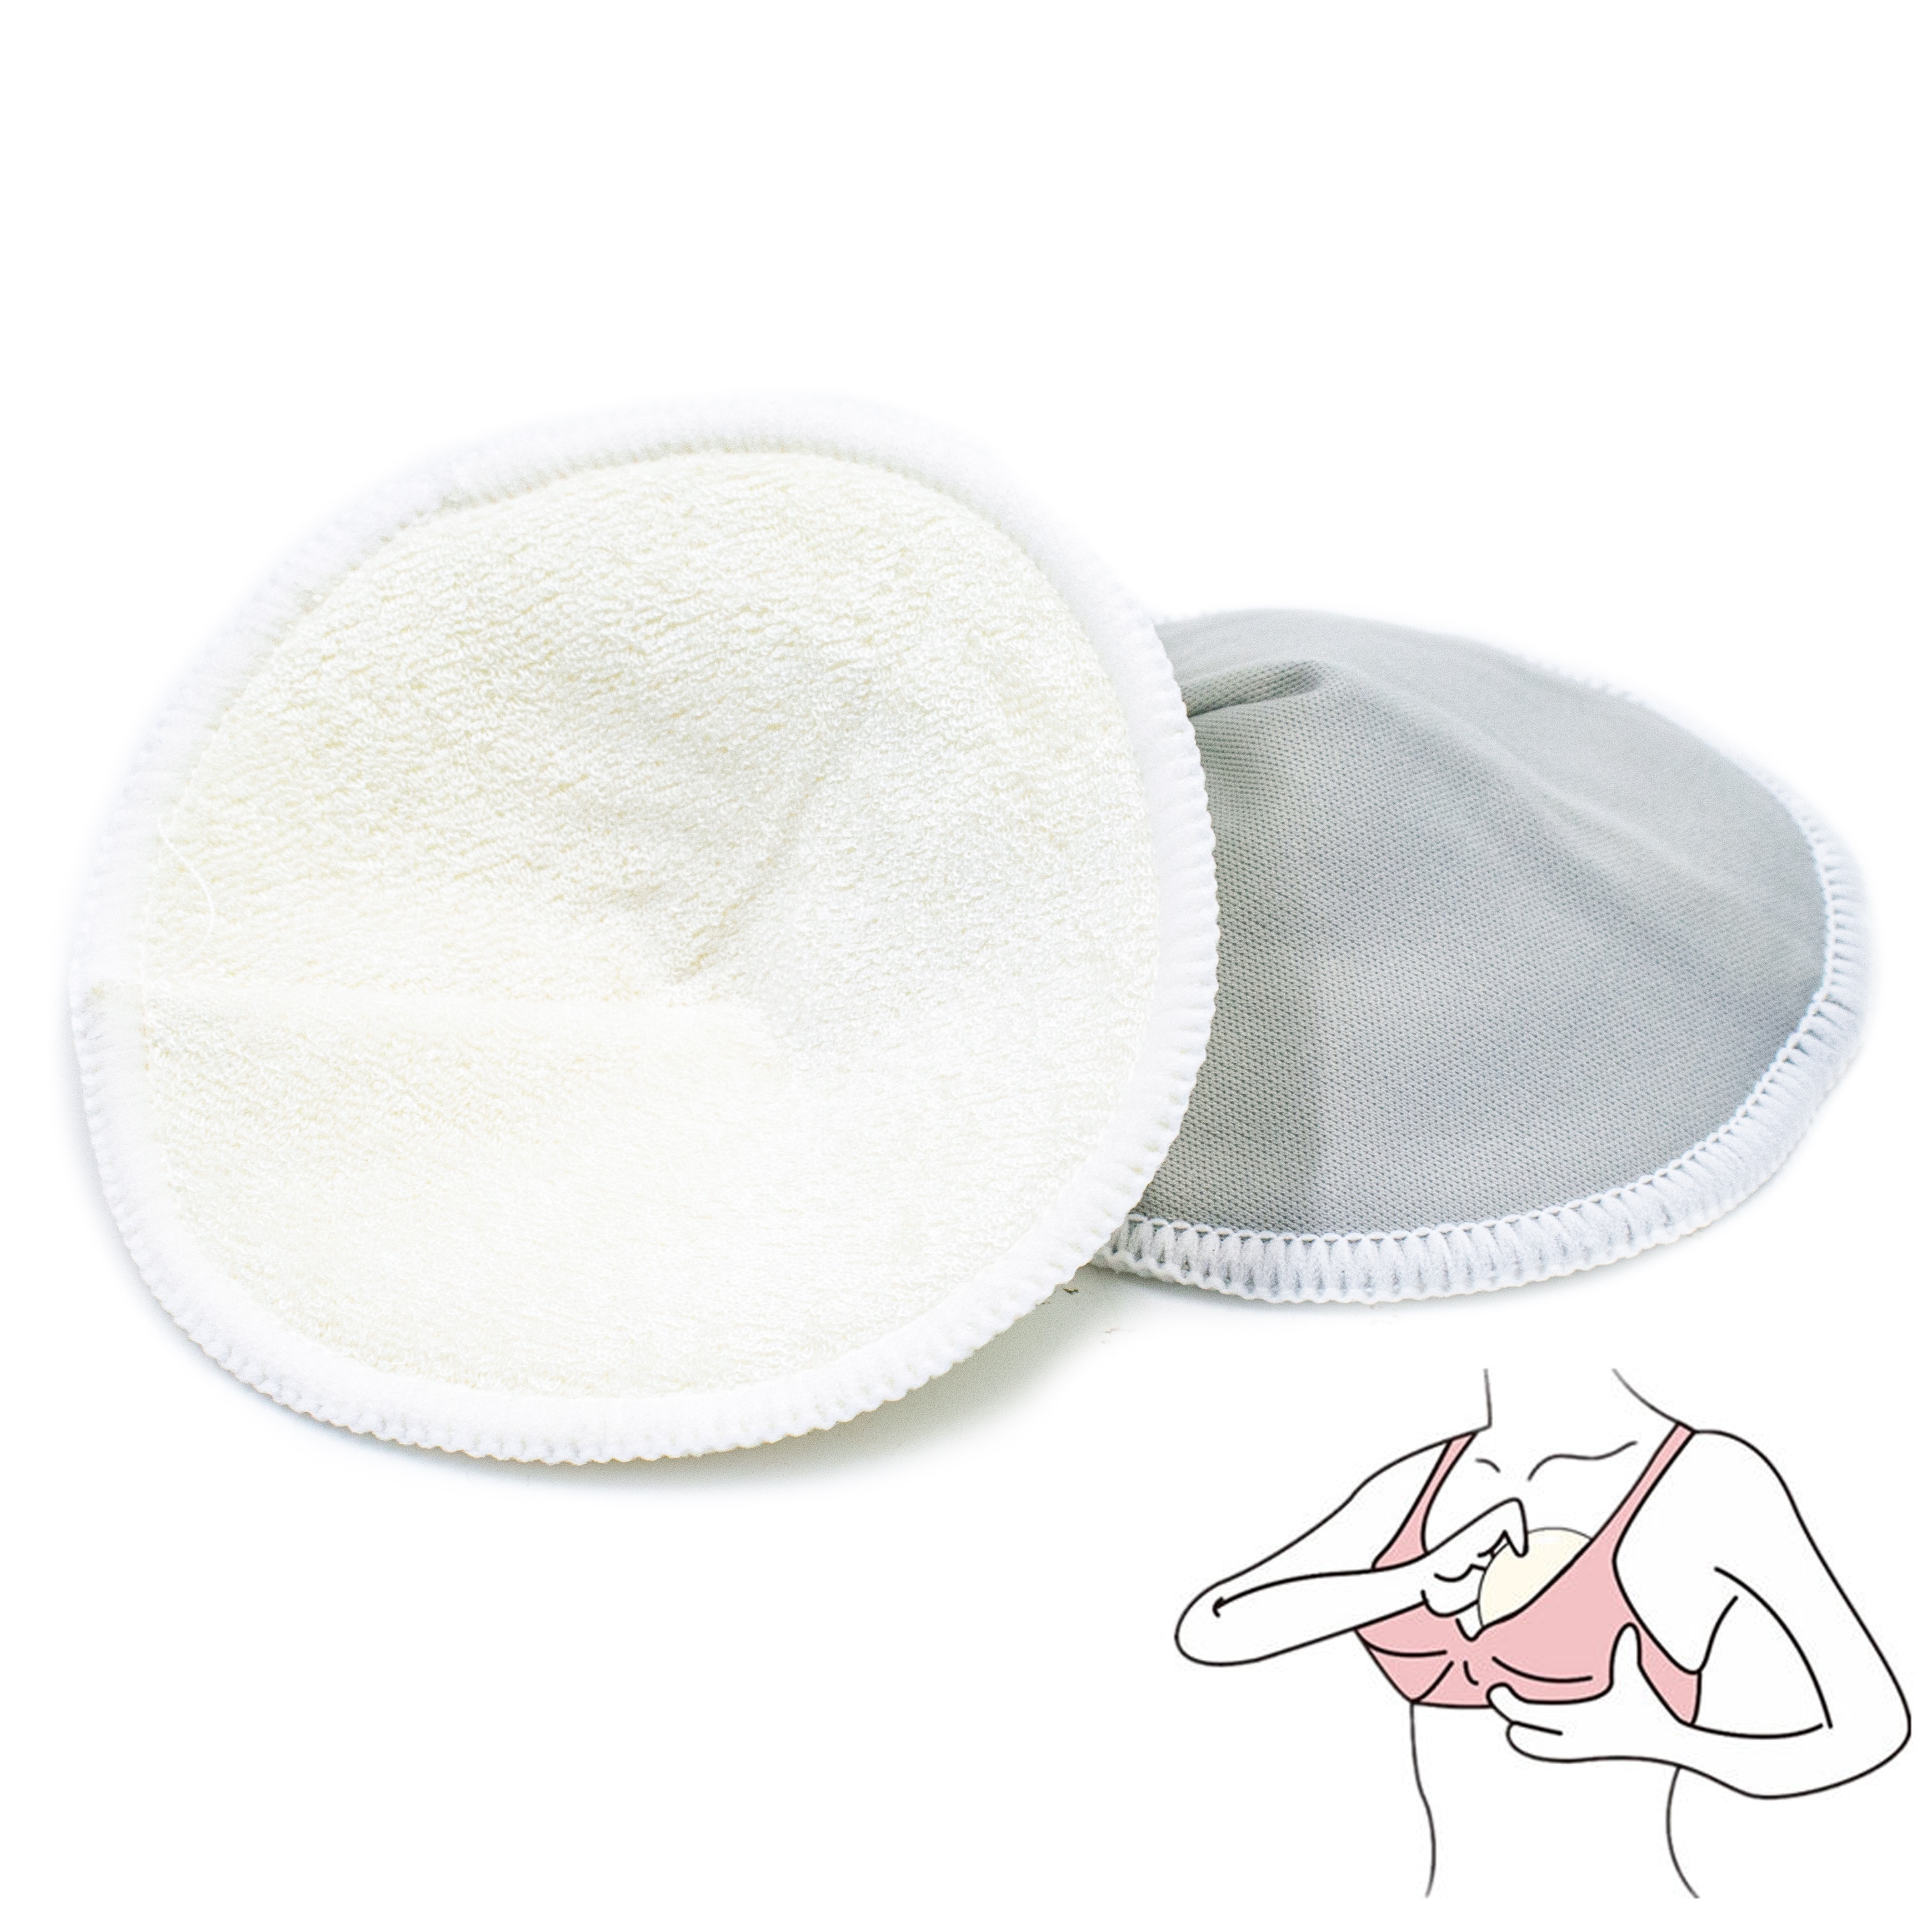 4 Pcs Skin-friendly Breast Pads Anti-overflow Nursing Pad